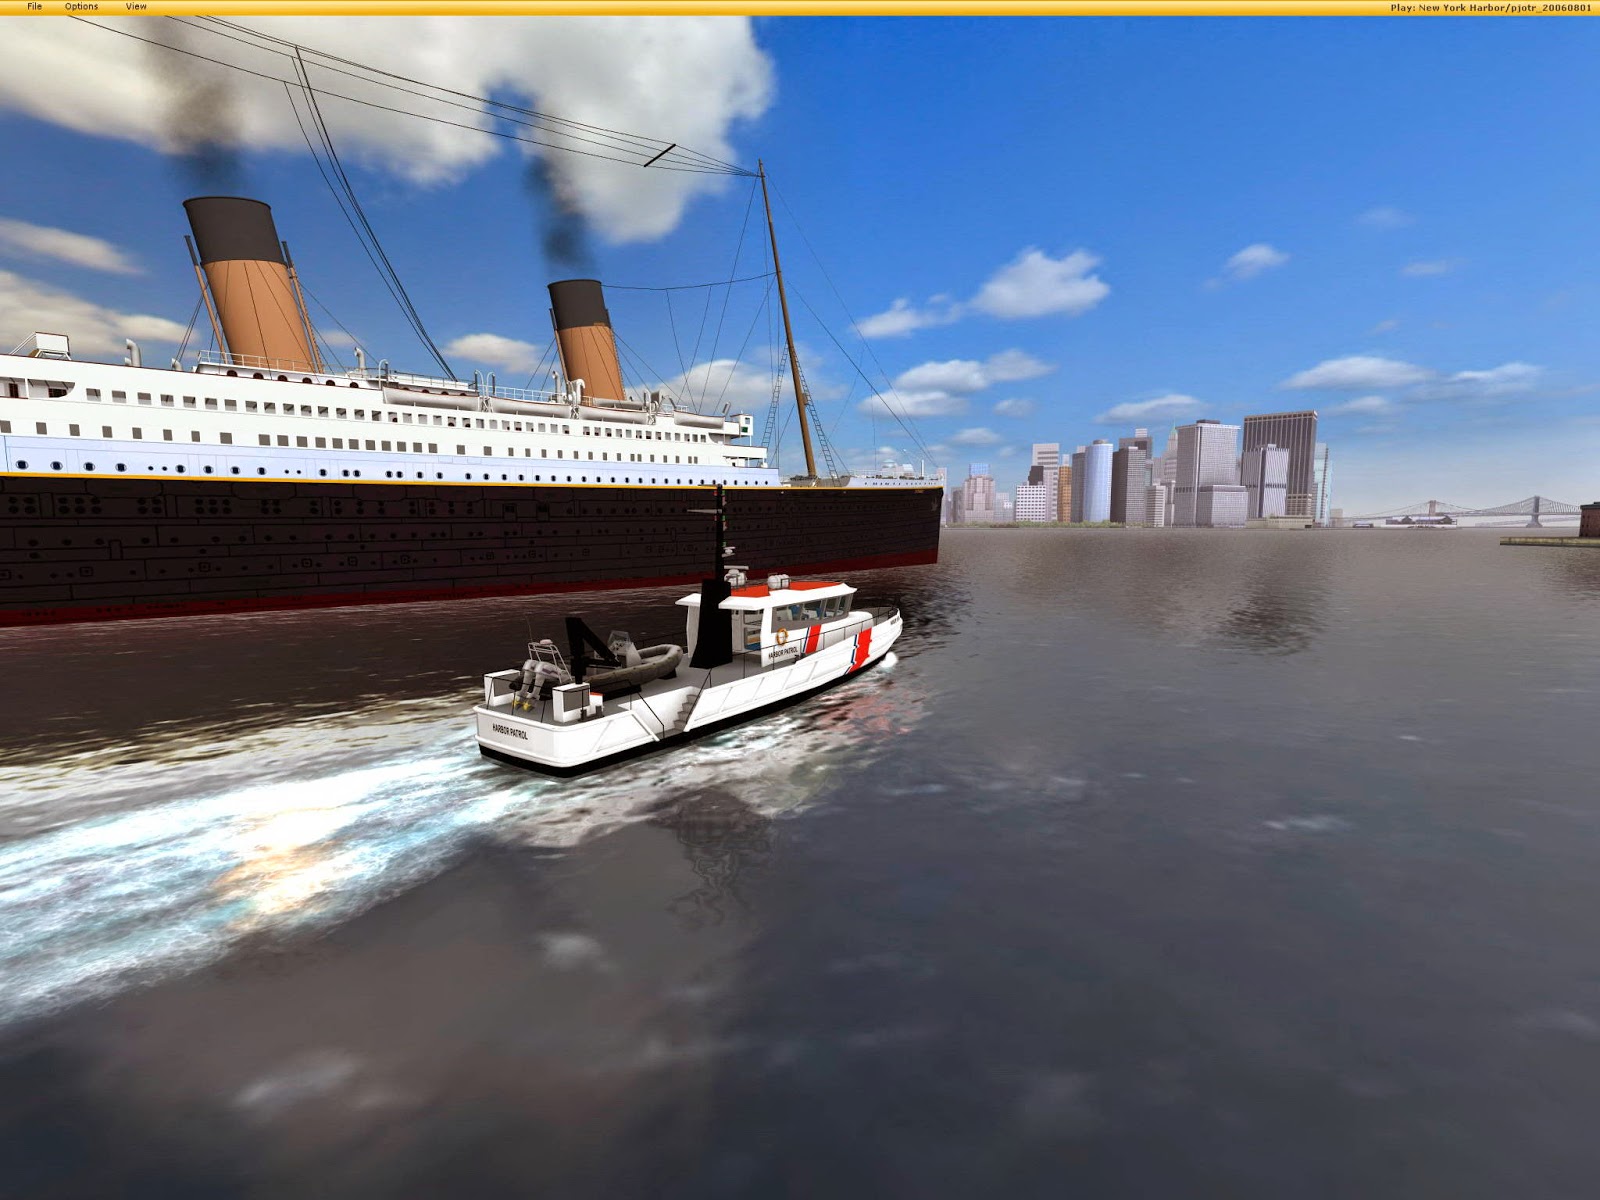 Tag Ship Page No 2 New Battleship Demo Games